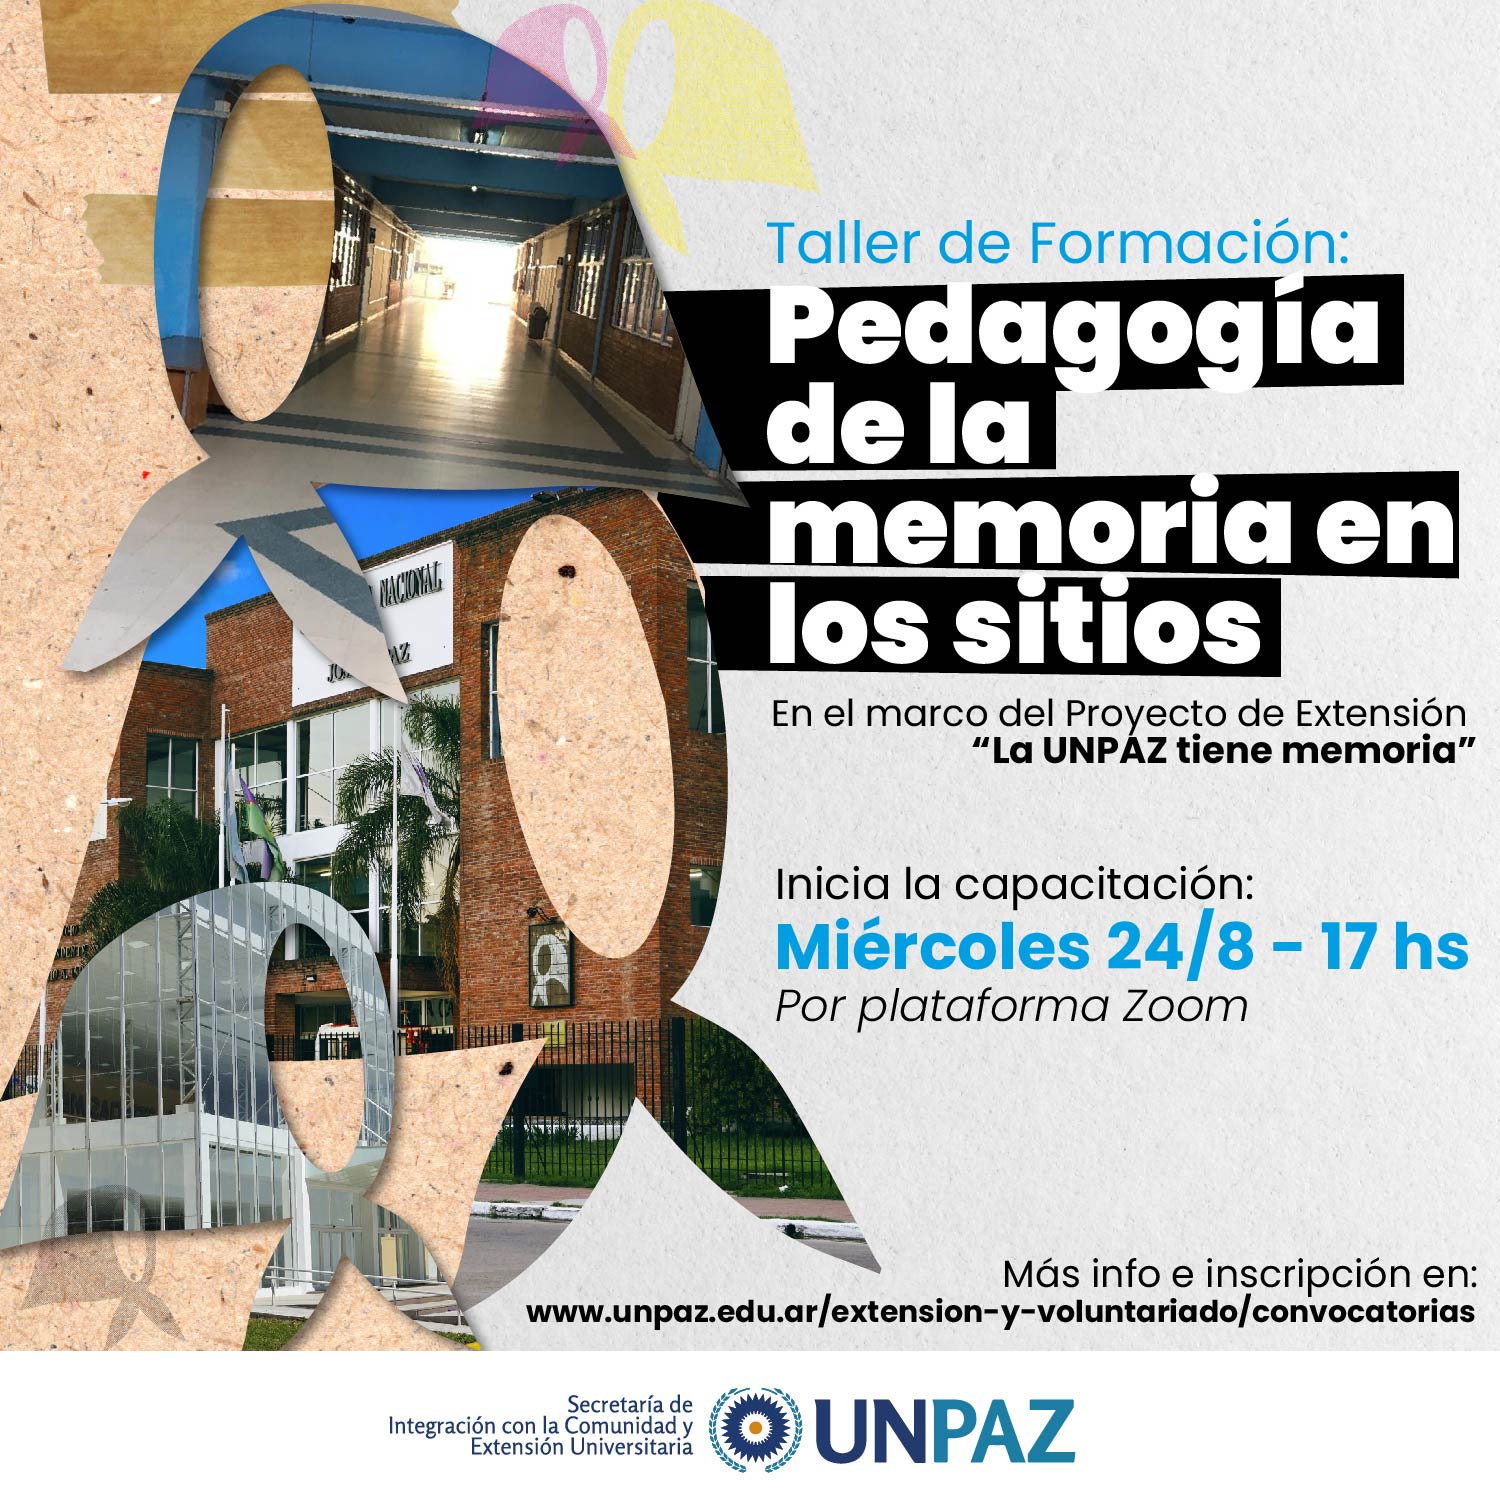 TALLER DE FORMACIÓN: "Pedagogía de la memoria en los sitios" en el marco del Proyecto de Extensión "La UNPAZ tiene memoria"  - UNPAZ